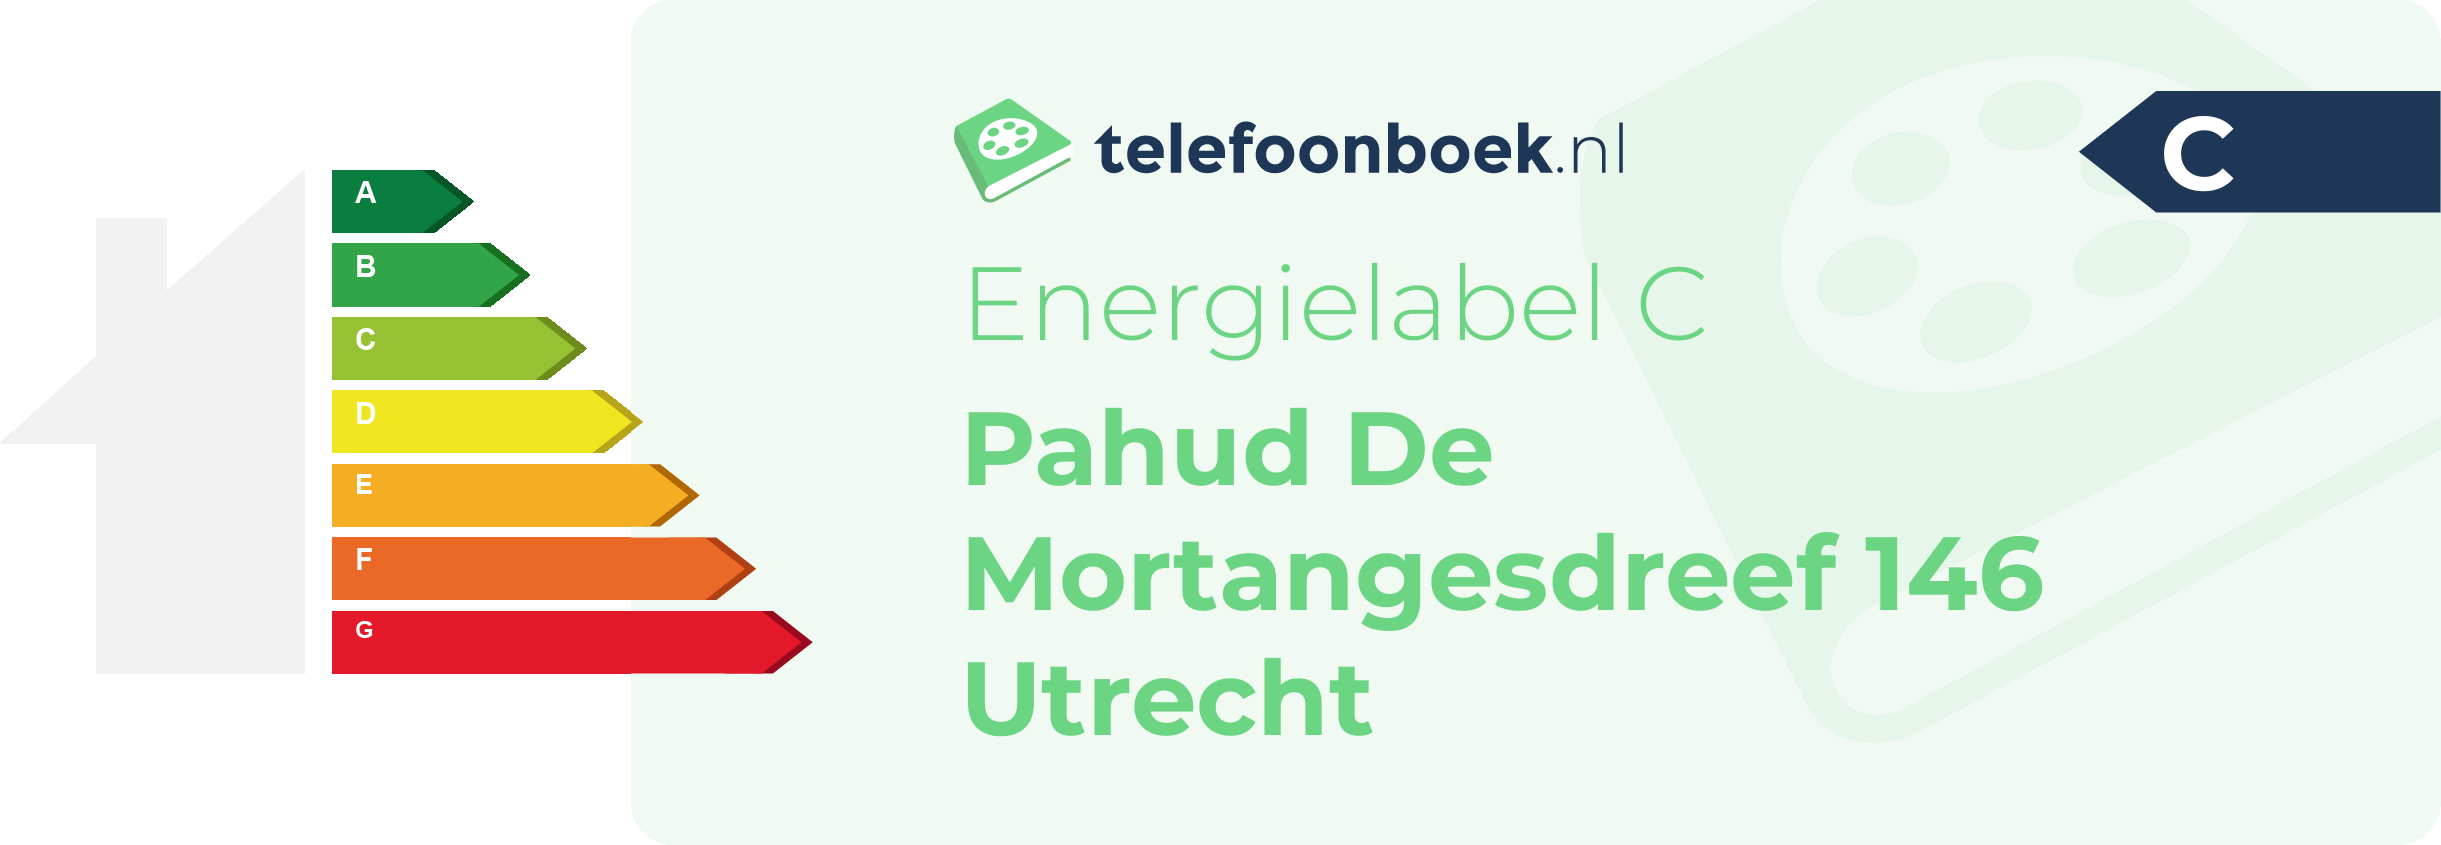 Energielabel Pahud De Mortangesdreef 146 Utrecht